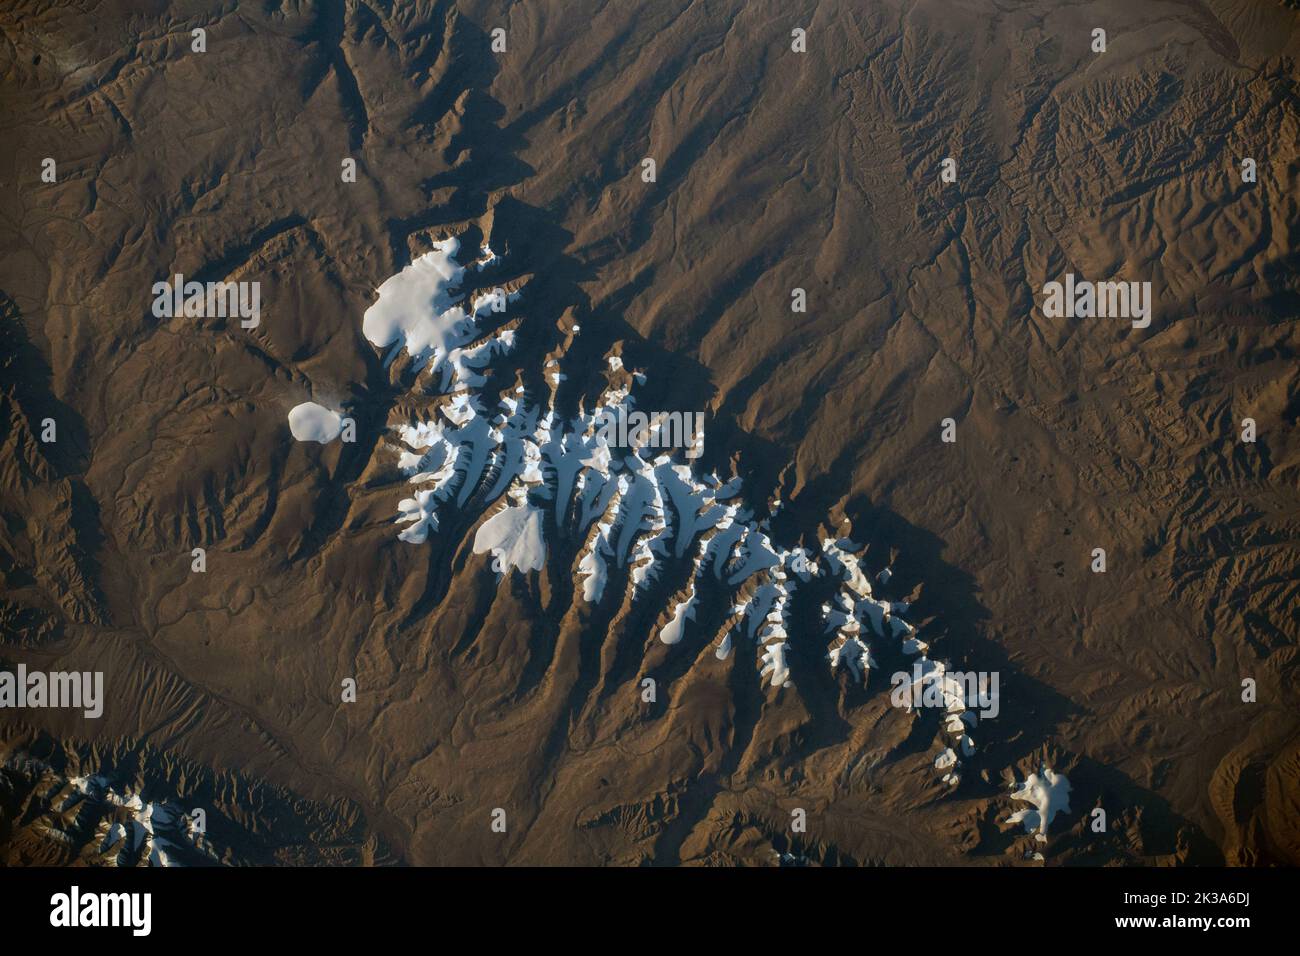 ISS - 05. September 2022 - Ein Teil des Tanggula-Gebirges in der Nähe des Hala-Sees in Westchina ist von der Internationalen Raumstation ISS aus abgebildet Stockfoto